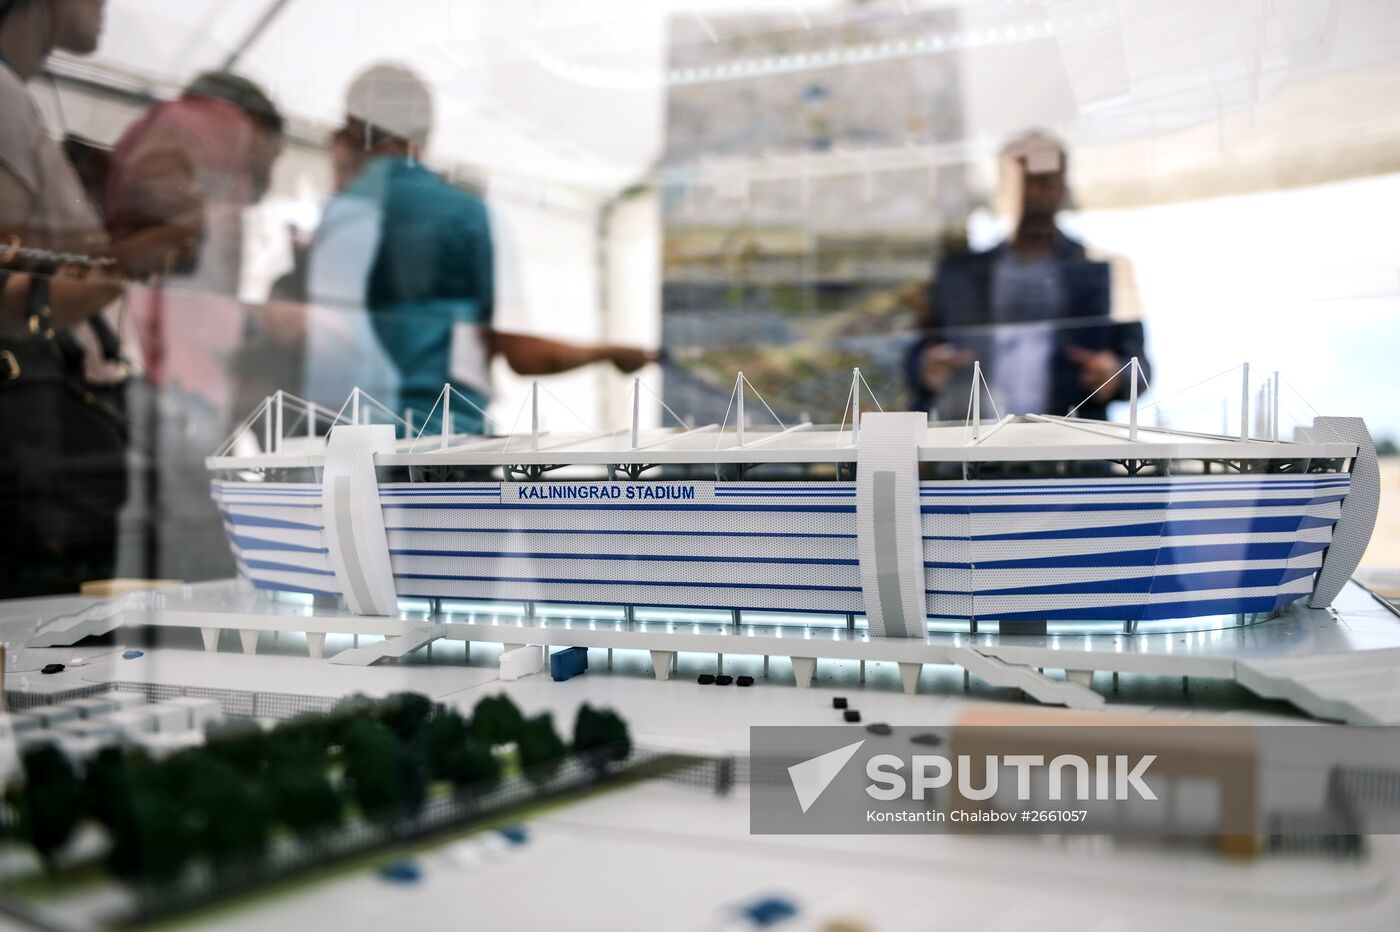 Construction of stadium in Kaliningrad for 2018 FIFA World Cup